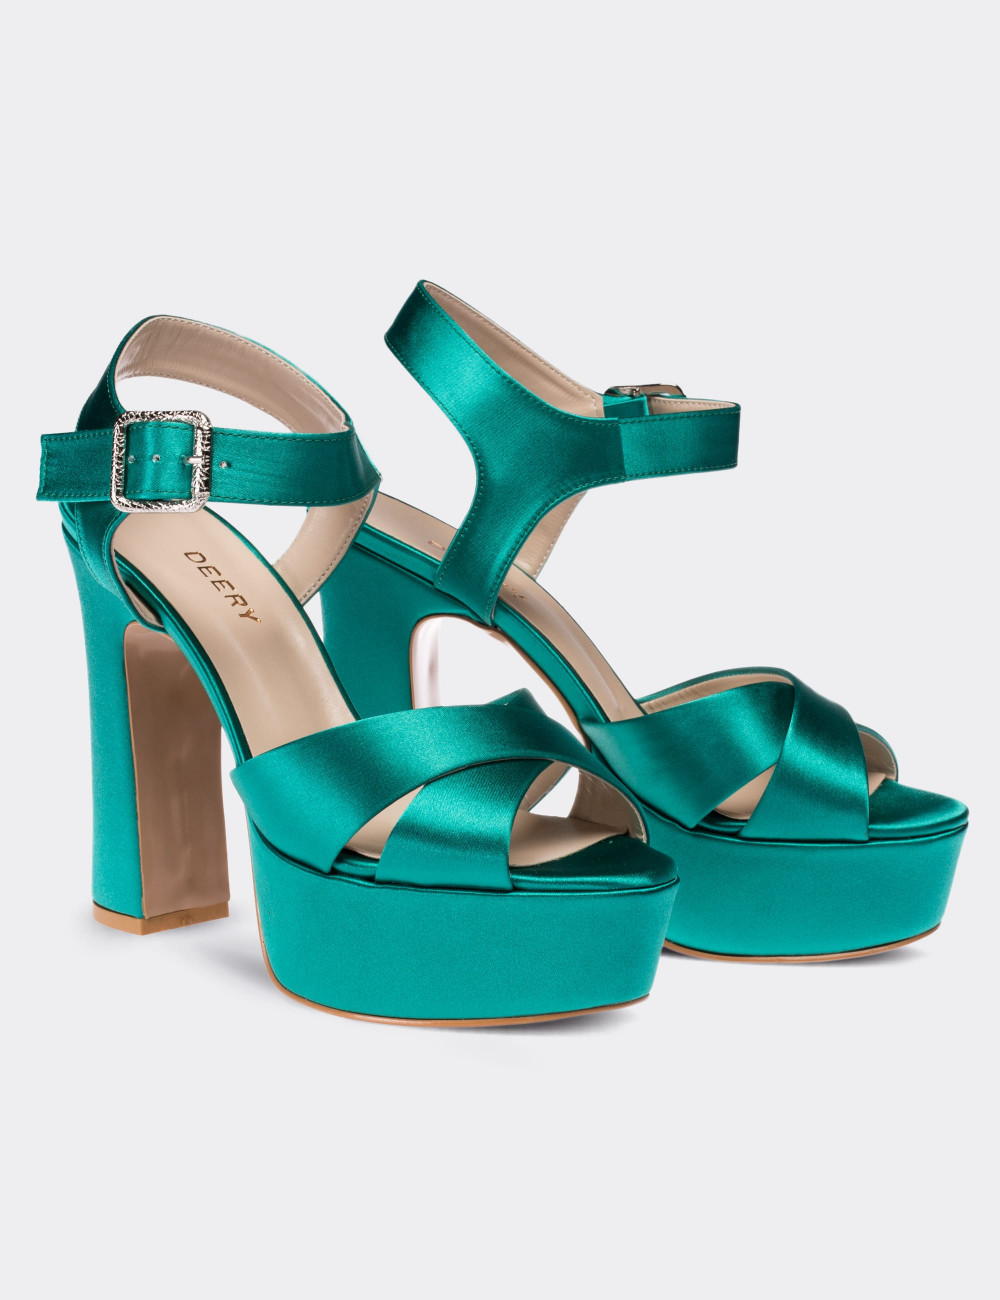 Yeşil Saten Abiye Topuklu Kadın Ayakkabı - C0700ZYSLM01